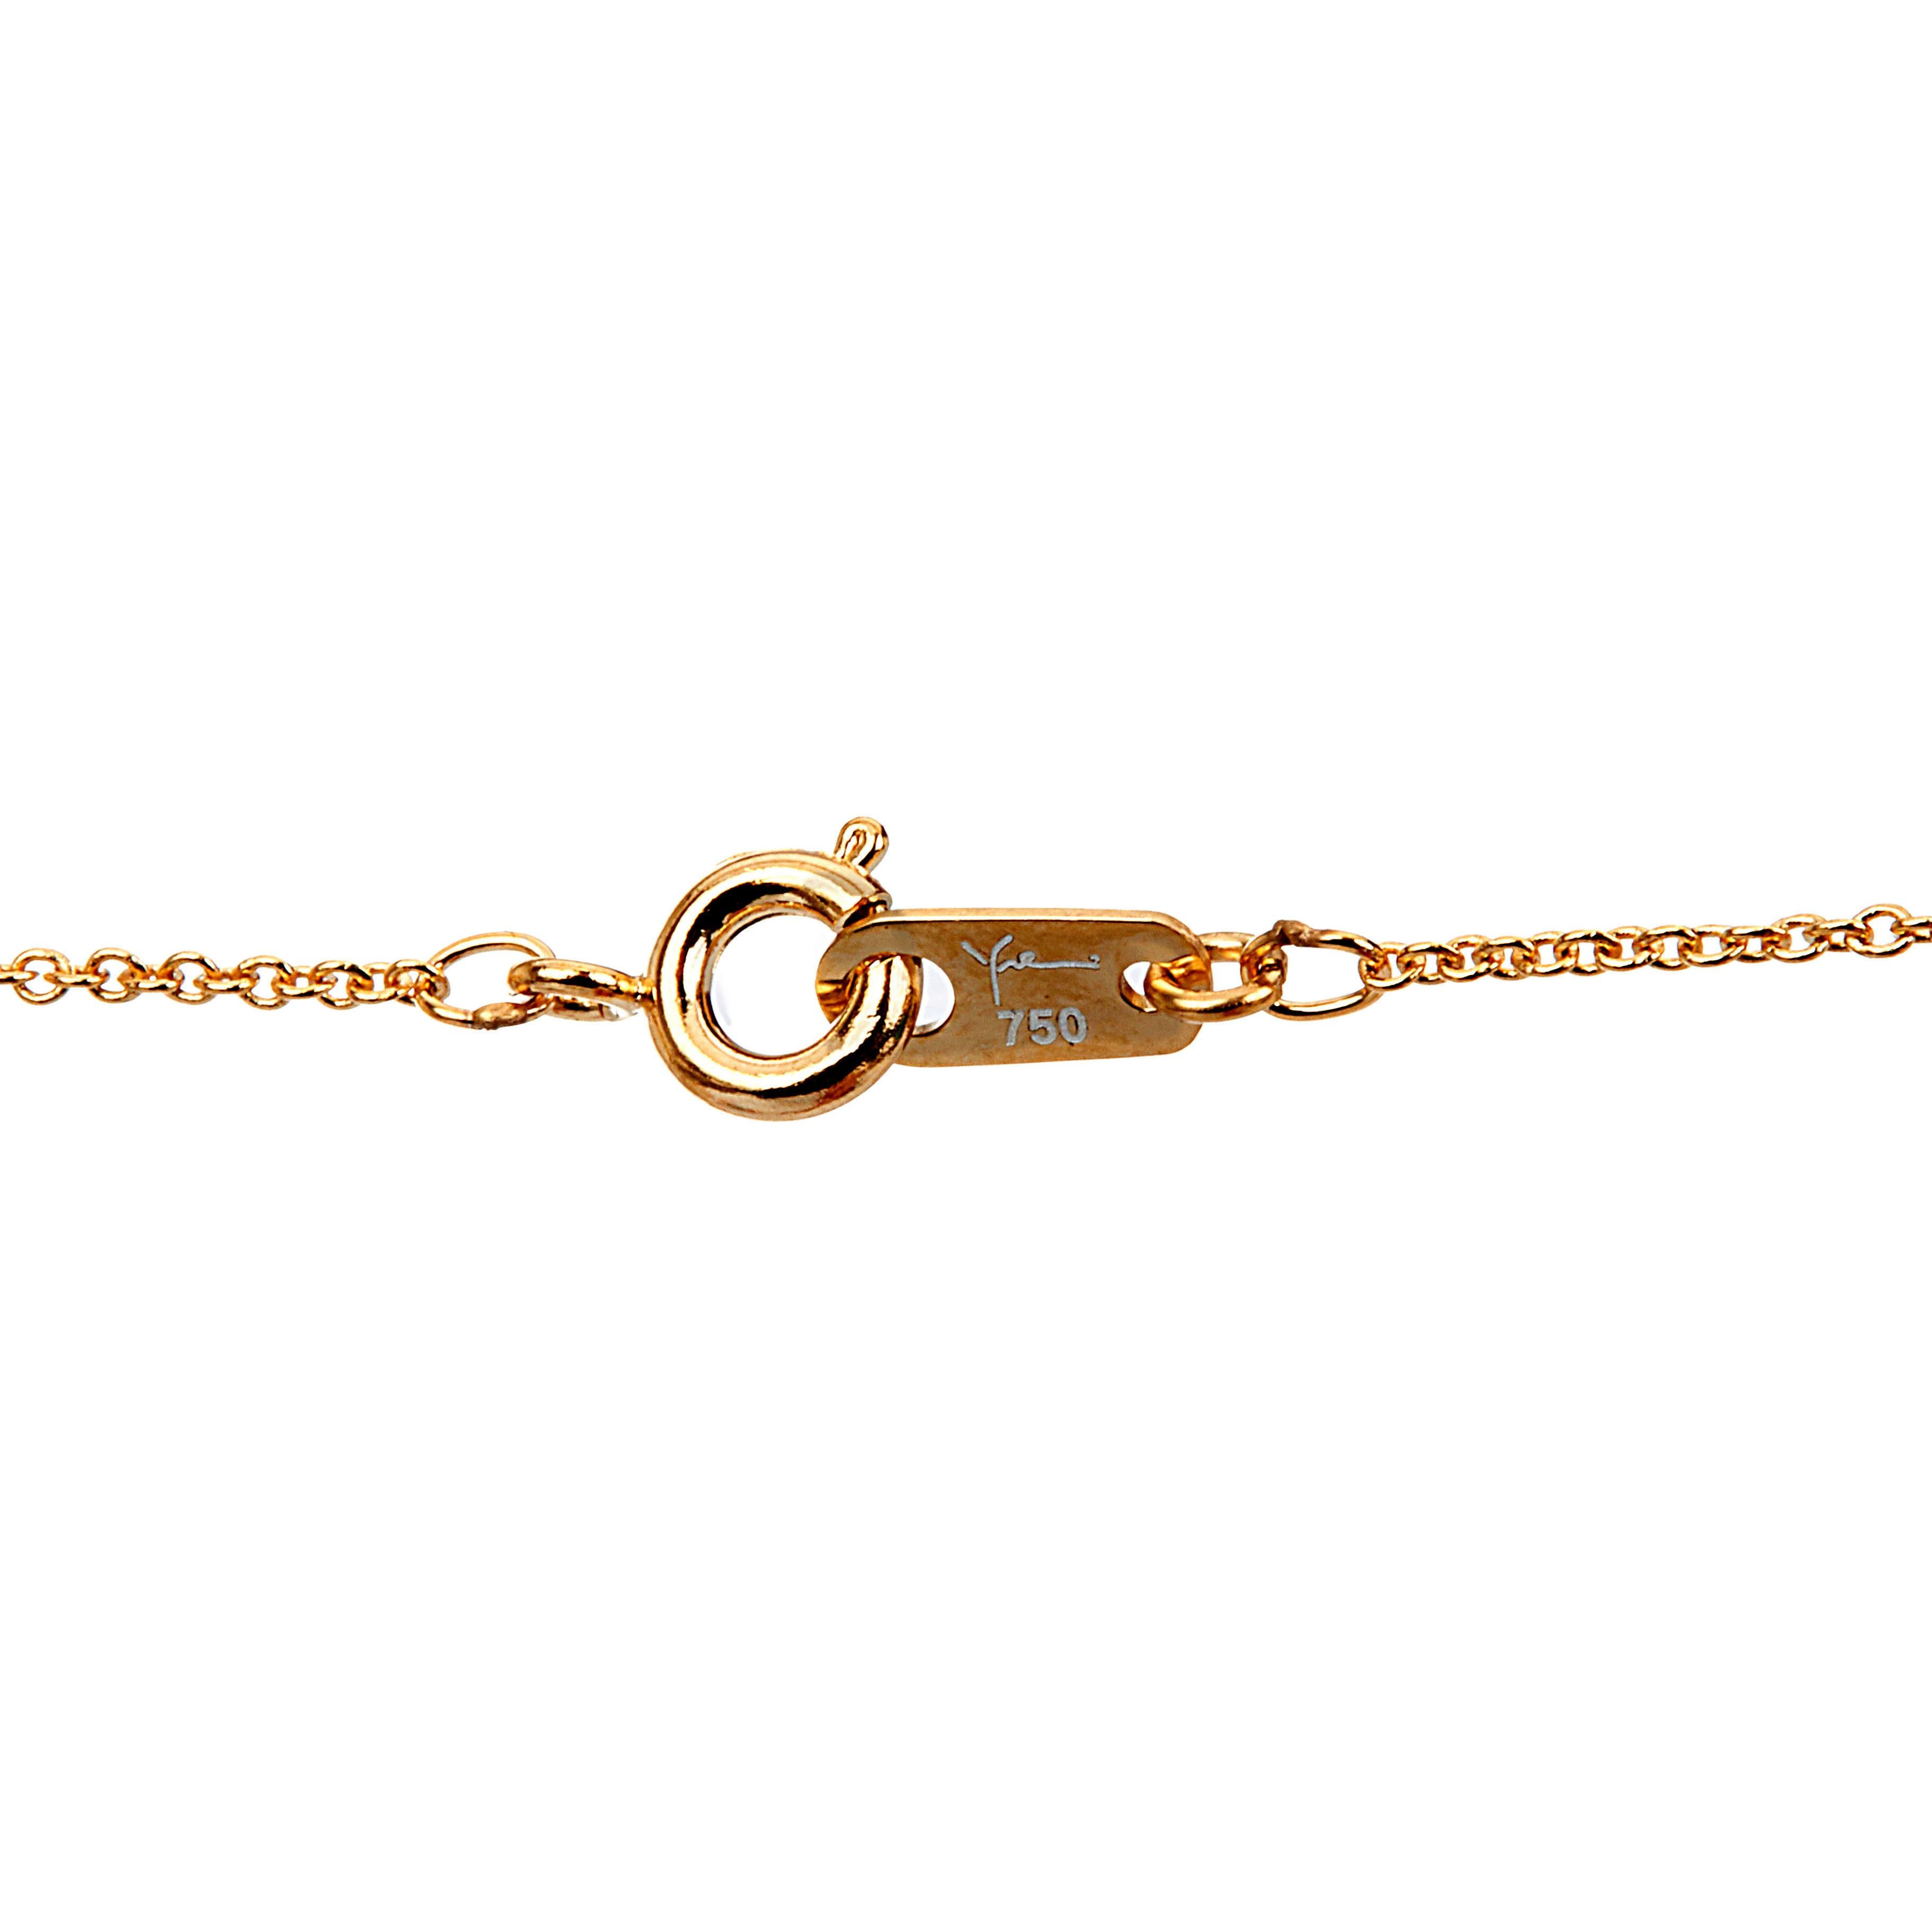 Round Cut Yemyungji Diamond 18 Karat Yellow Gold Drop Pendant Chain Necklace